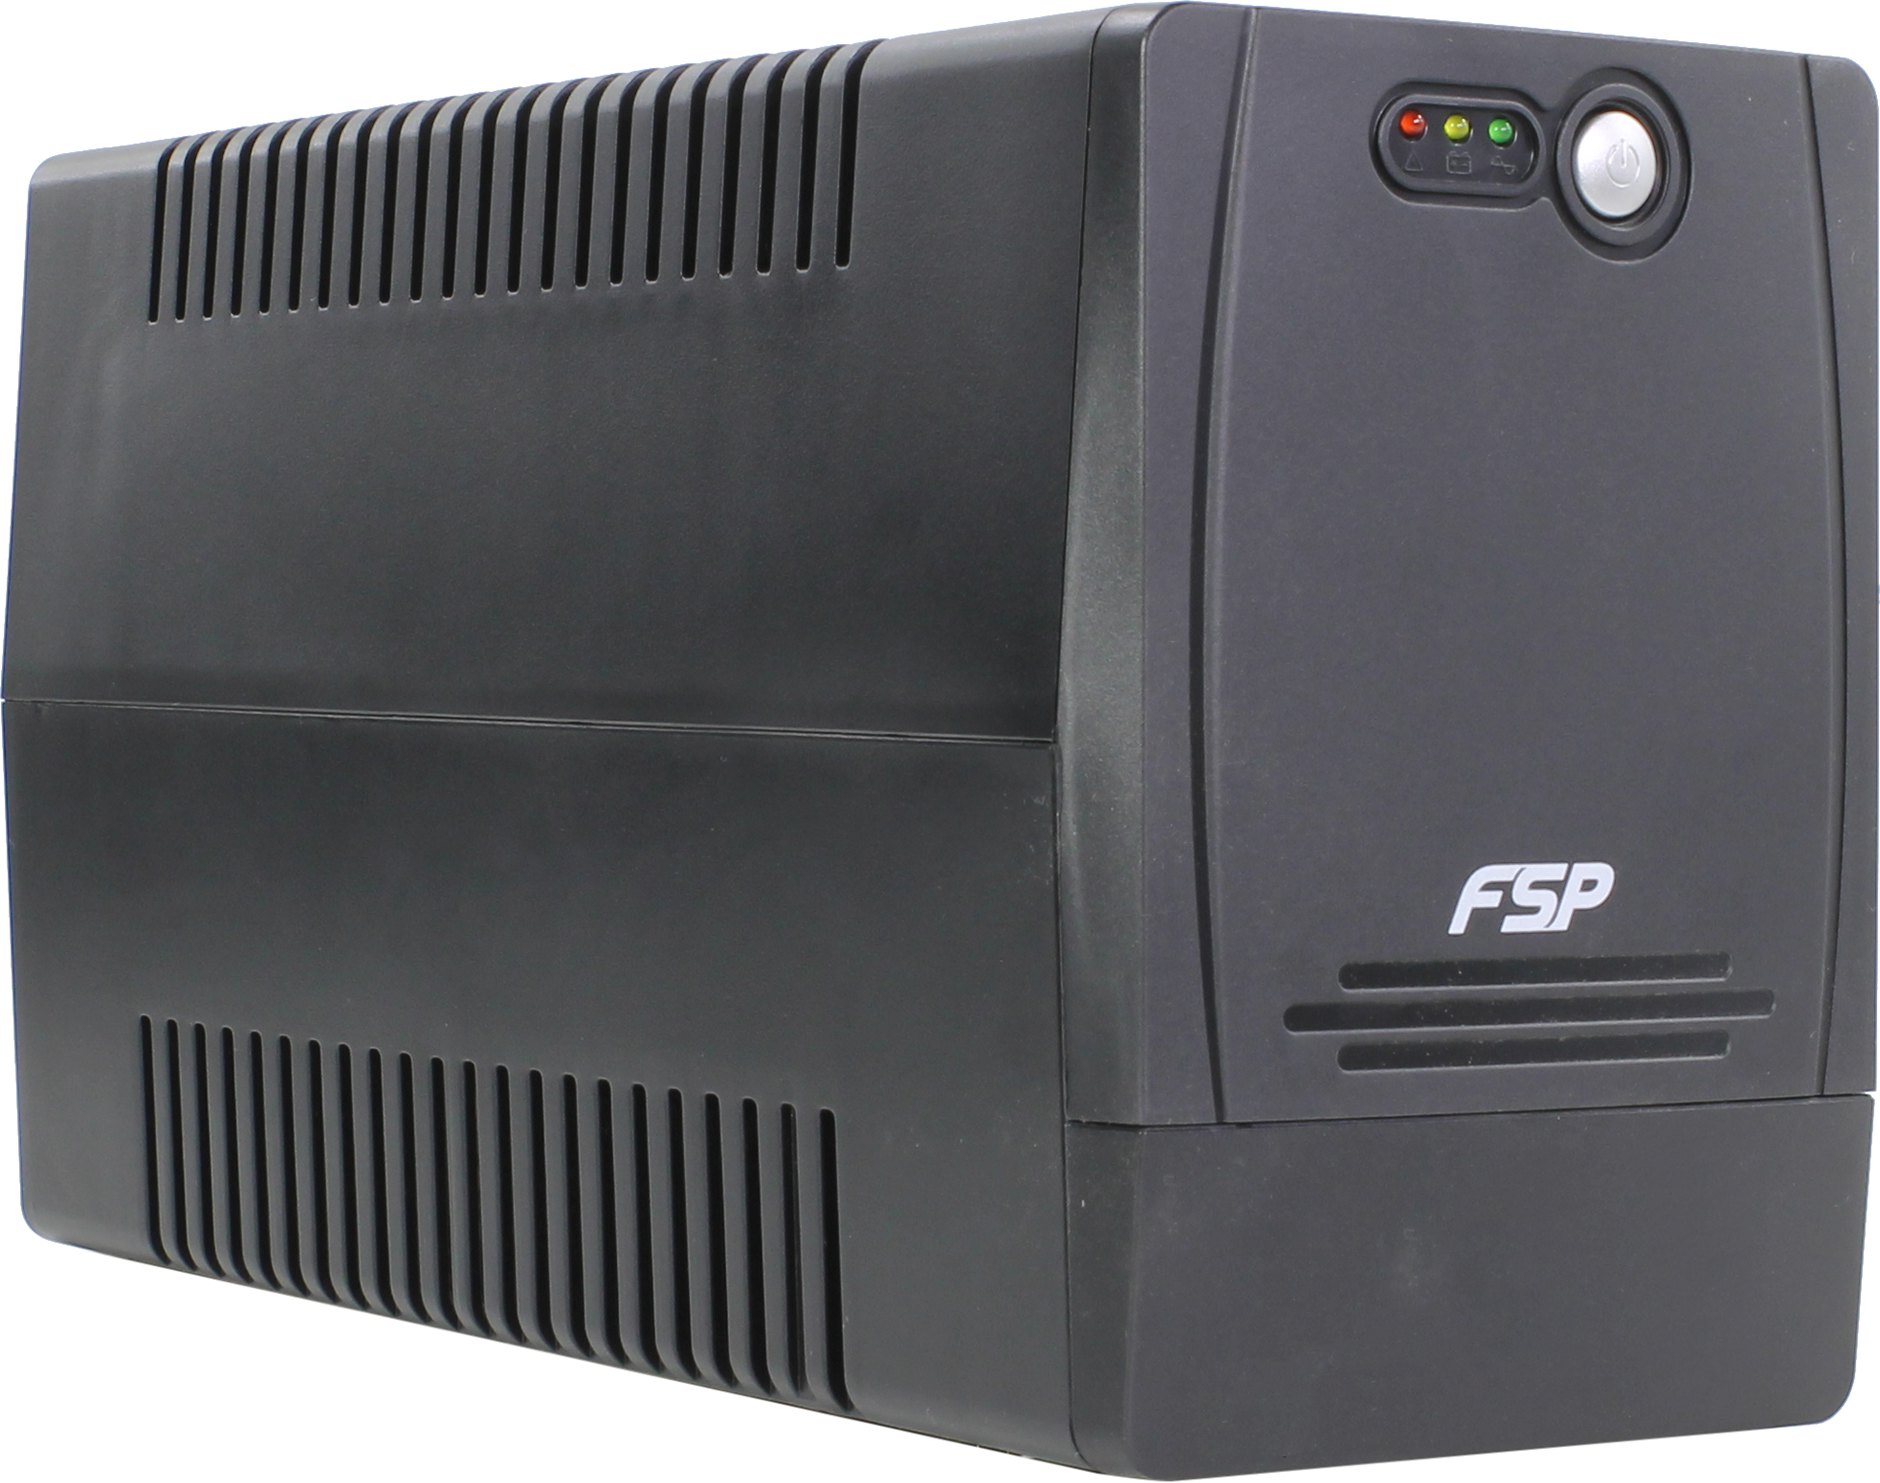 Источник бесперебойного питания FSP FP 650 600VA SMART T360W PPF3601402